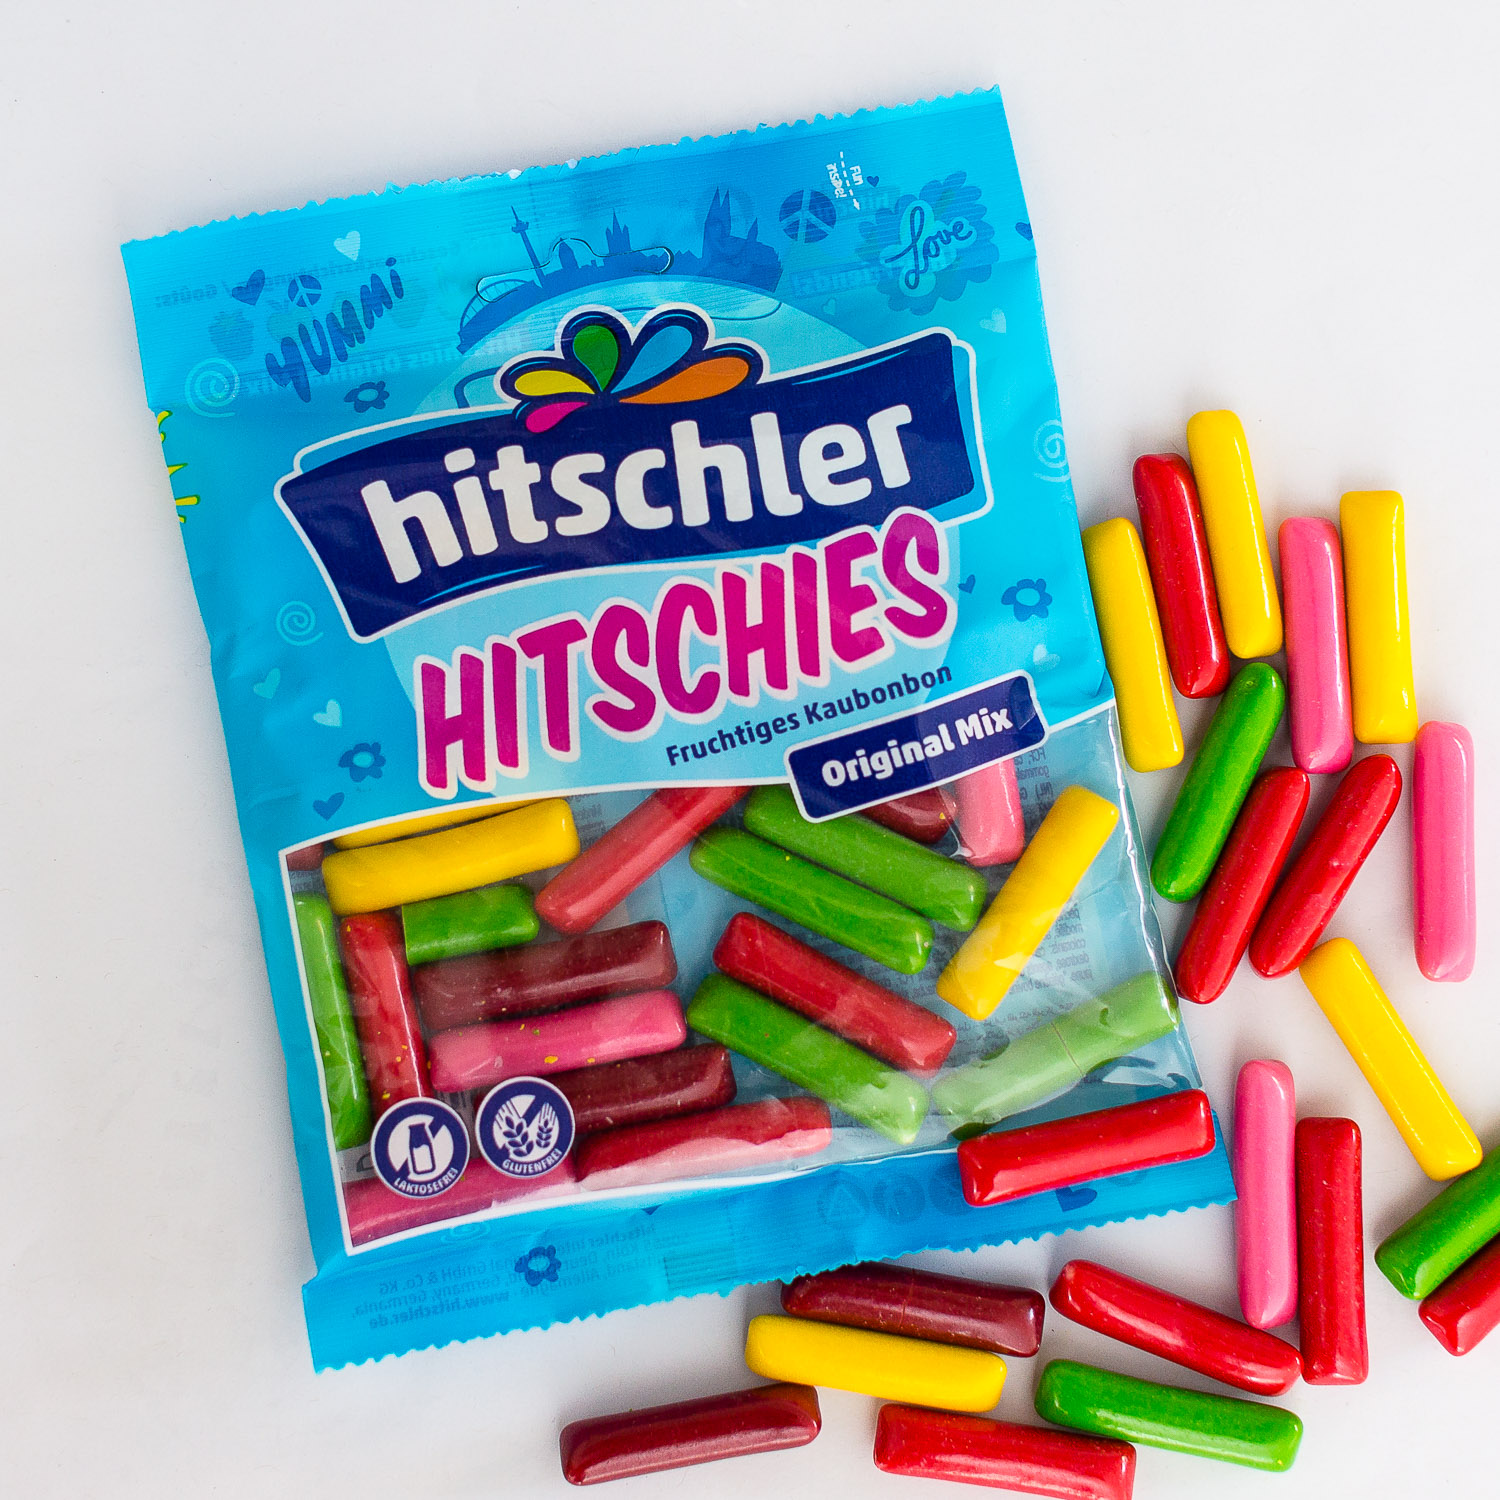 hitschies Hitschies Original Mix 150g  Online kaufen im World of Sweets  Shop